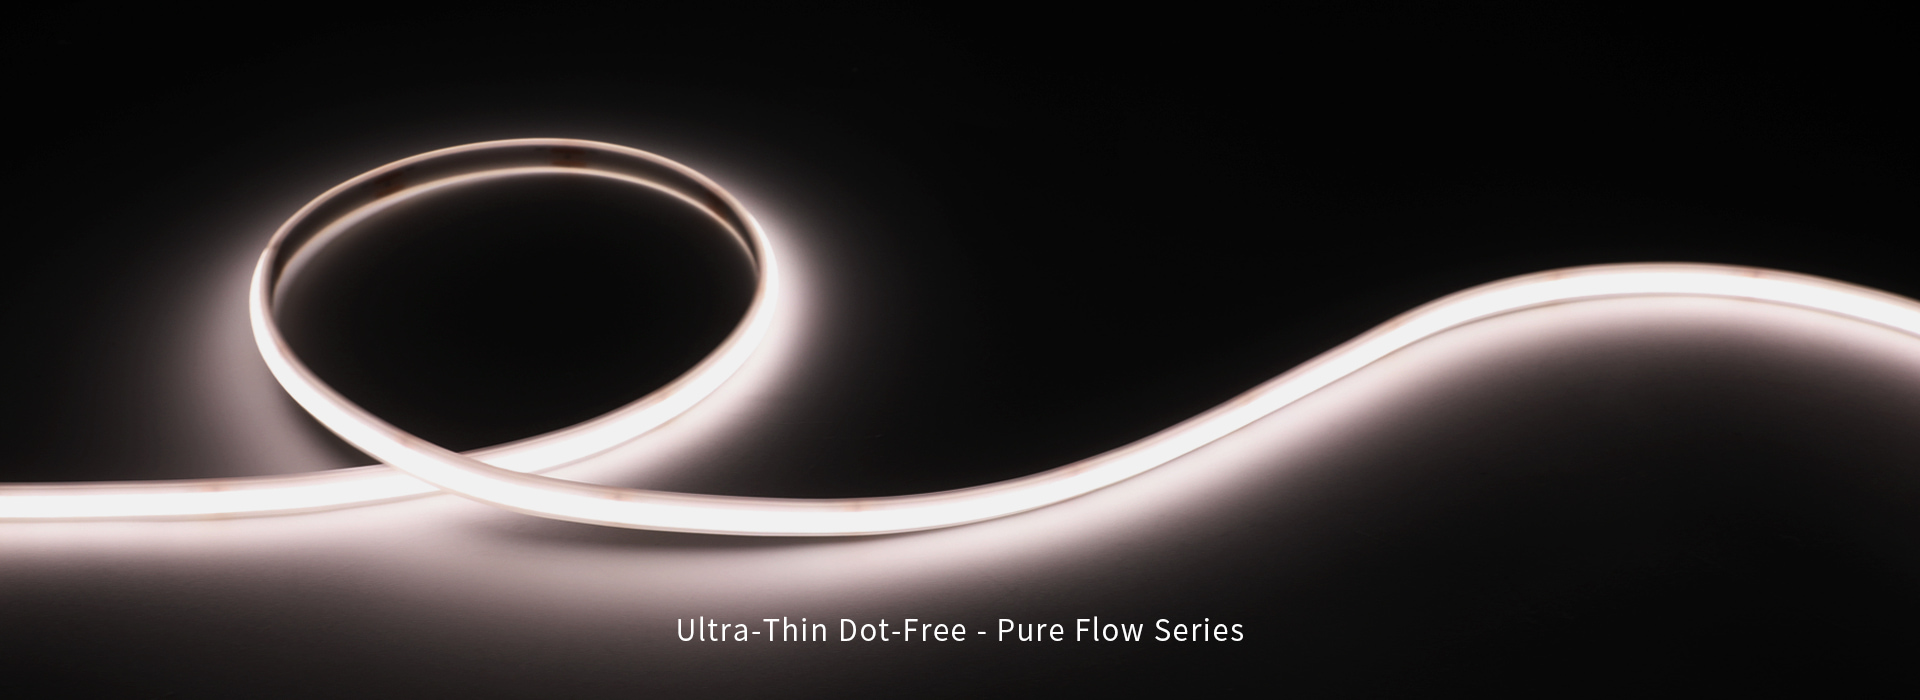 Ultrafino sem pontos - série Pure Flow